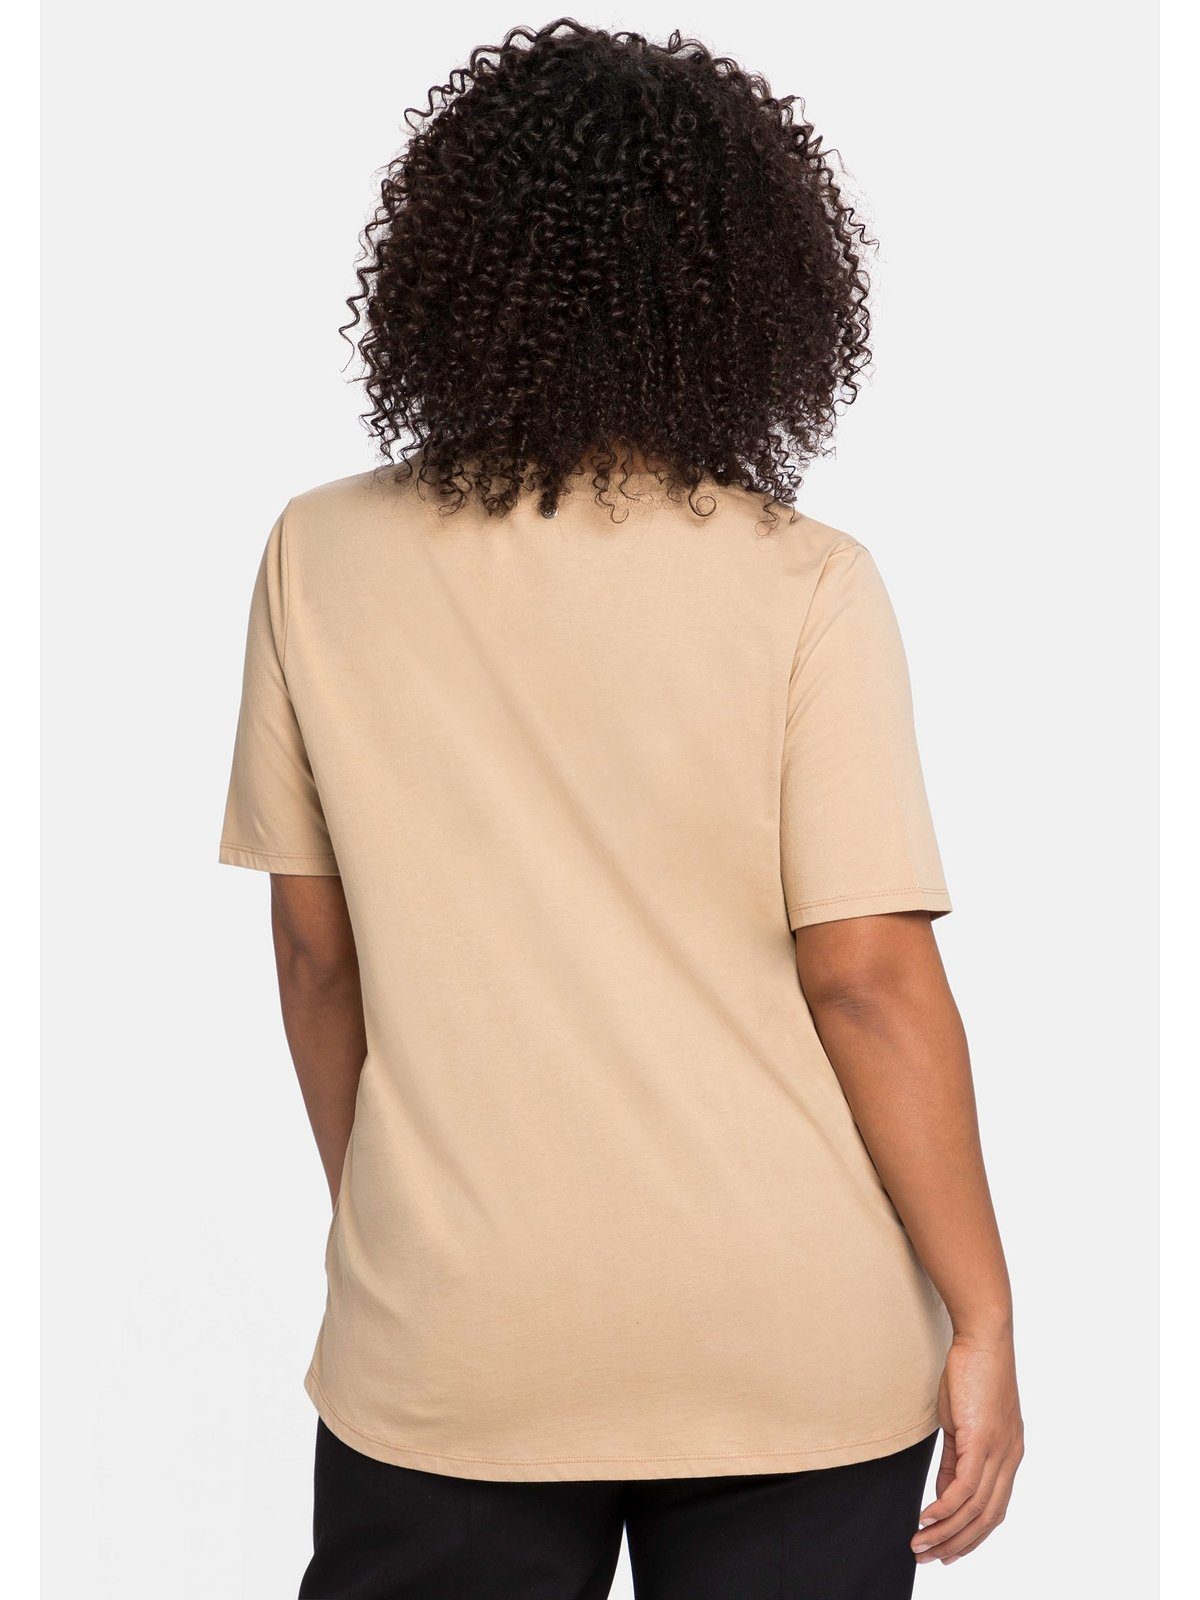 Sheego mit Falte in A-Linie camelfarben T-Shirt Große V-Ausschnitt, am Größen